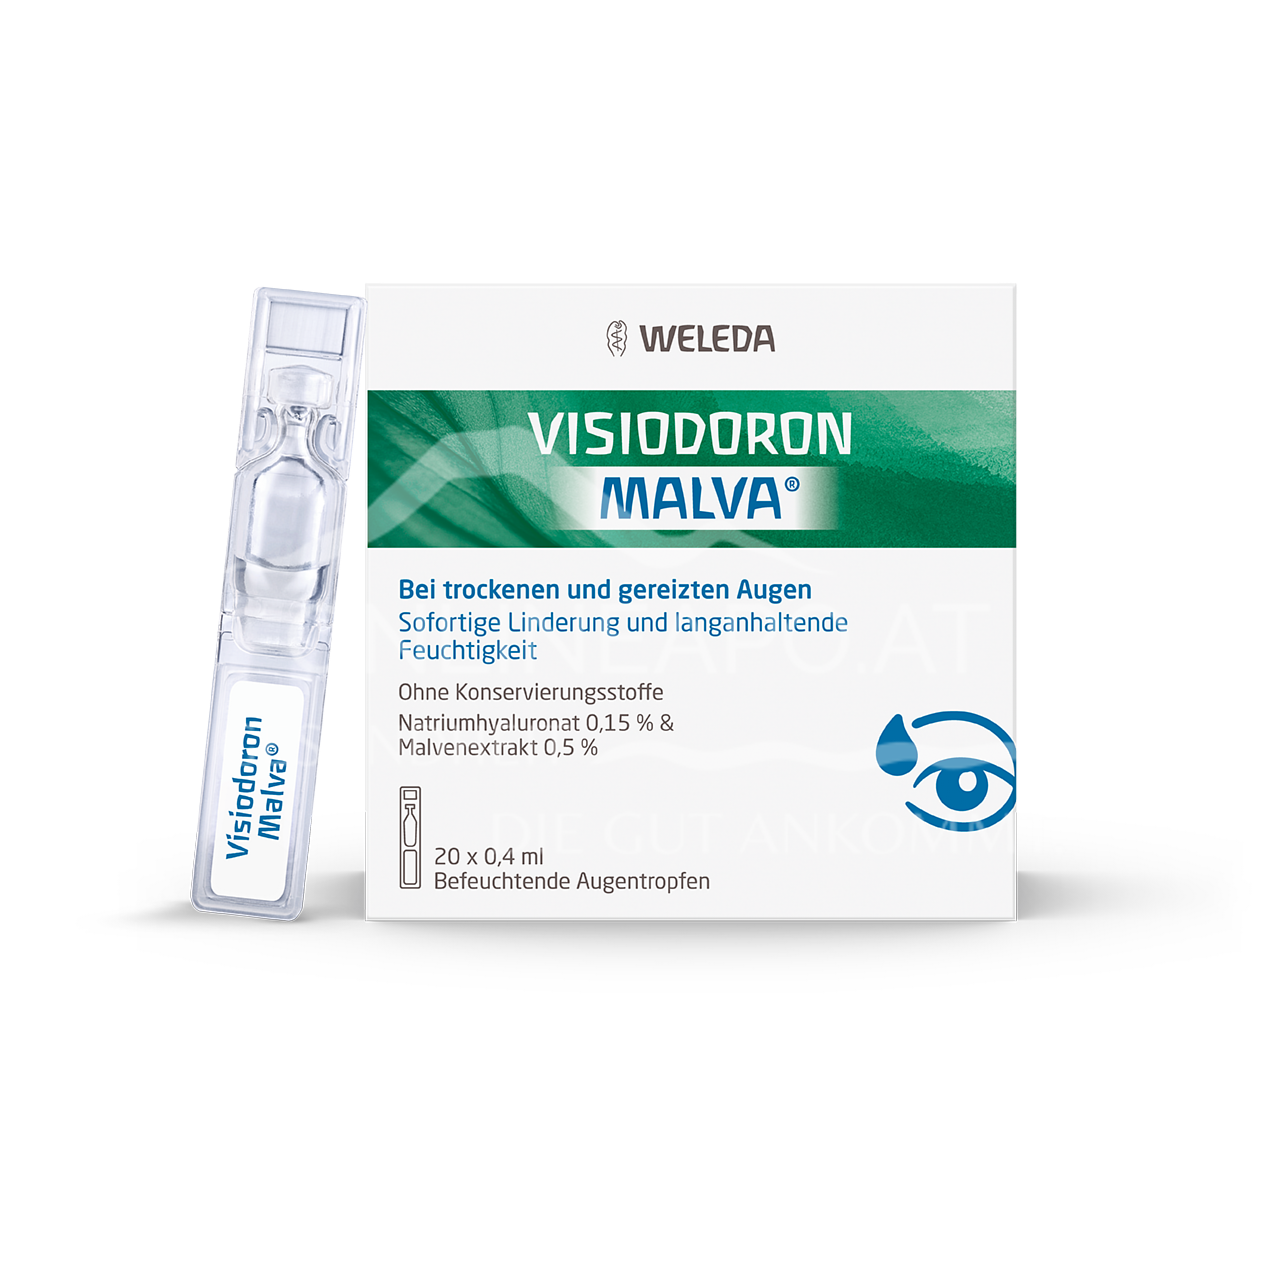 Weleda Visiodoron Malva® Augentropfen 0,4 ml